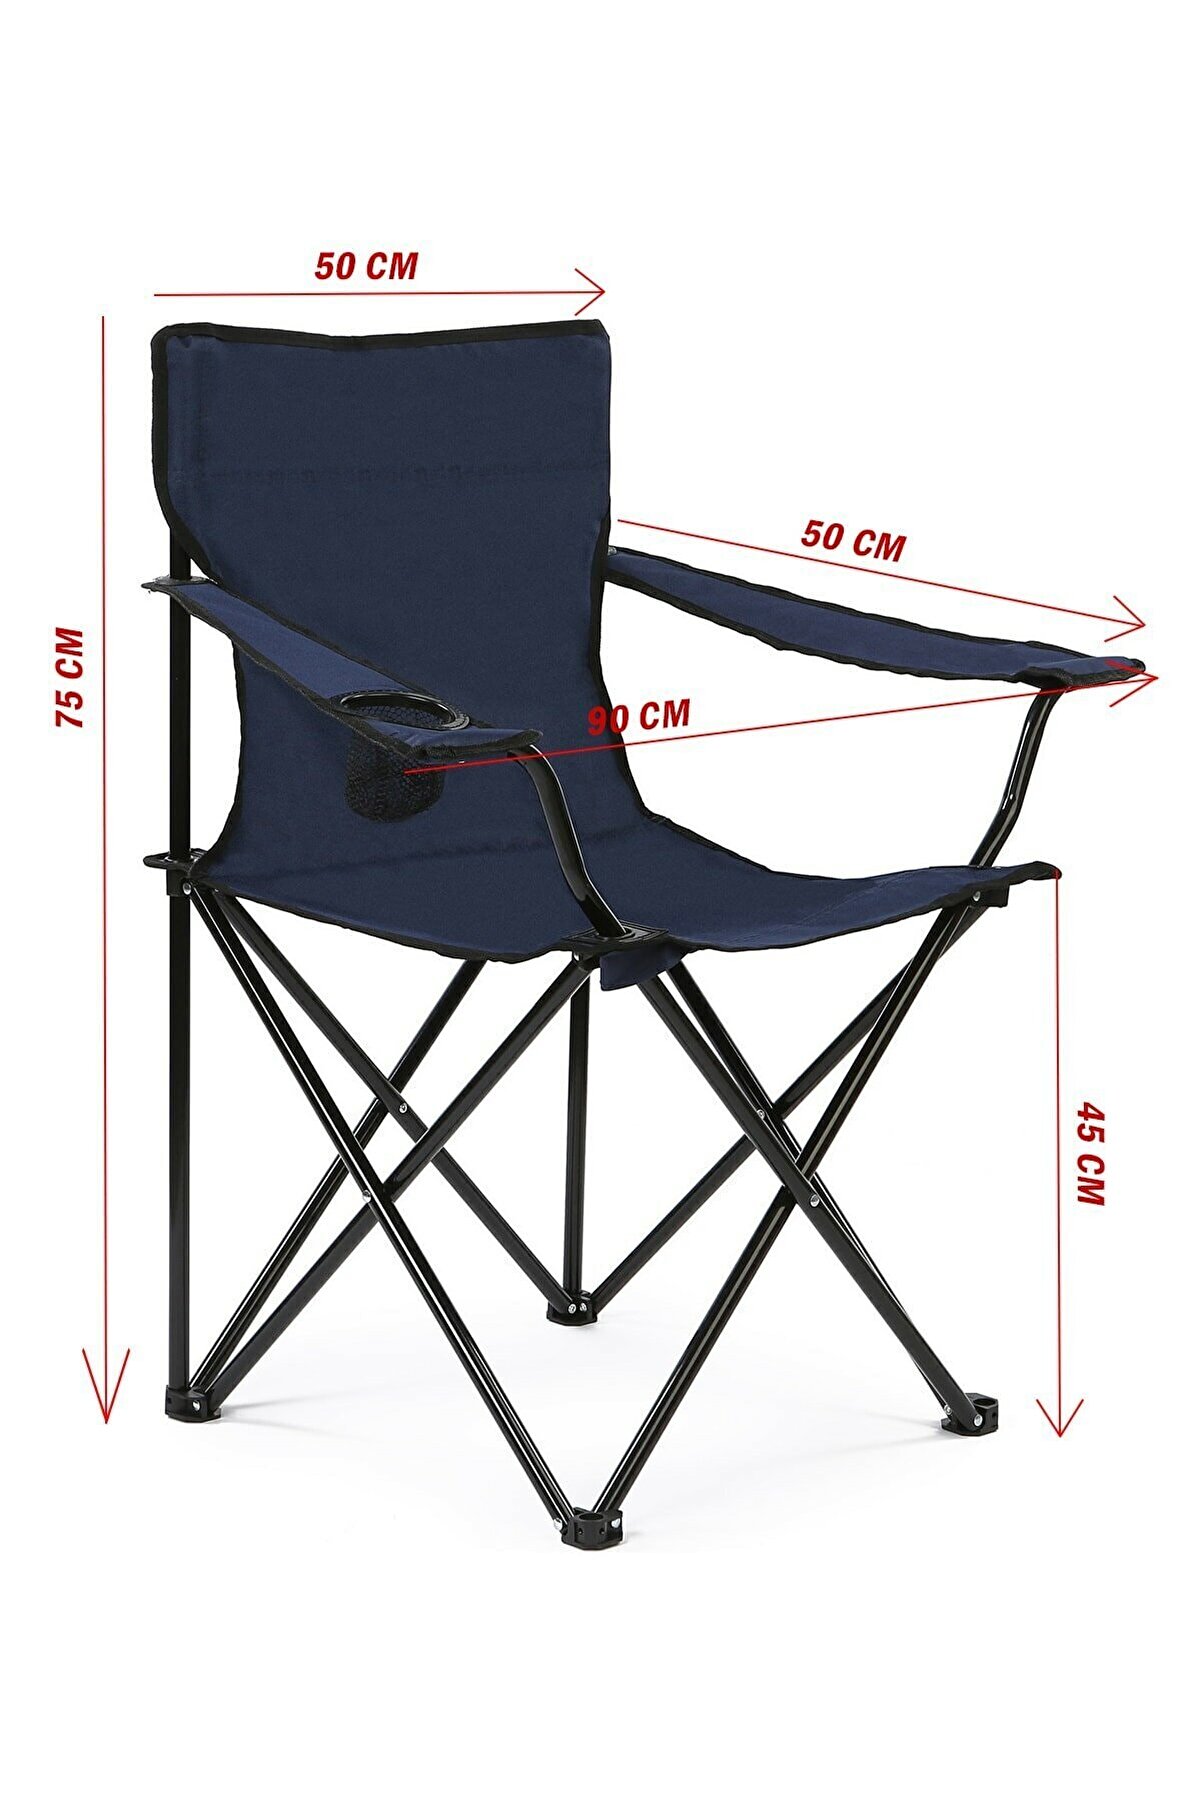 SHADOW Lacivert Katlanabilir Kamp Sandalyesi Piknik Sandalyesi Plaj Sandalyesi Taşıma Çantalı